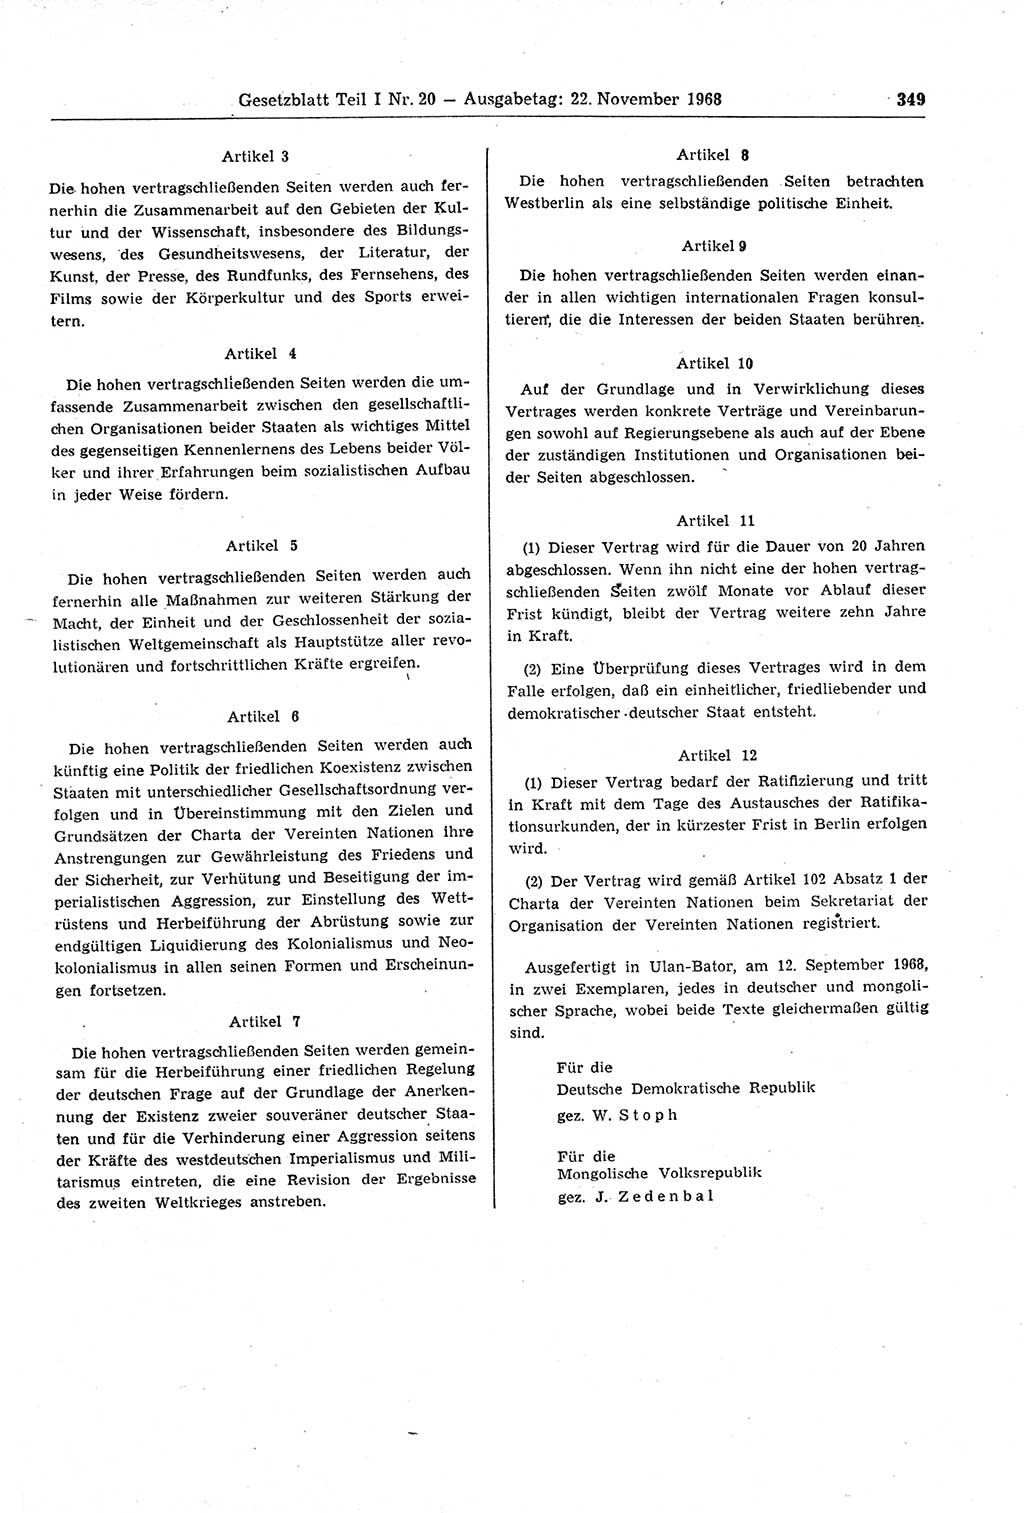 Gesetzblatt (GBl.) der Deutschen Demokratischen Republik (DDR) Teil Ⅰ 1968, Seite 349 (GBl. DDR Ⅰ 1968, S. 349)